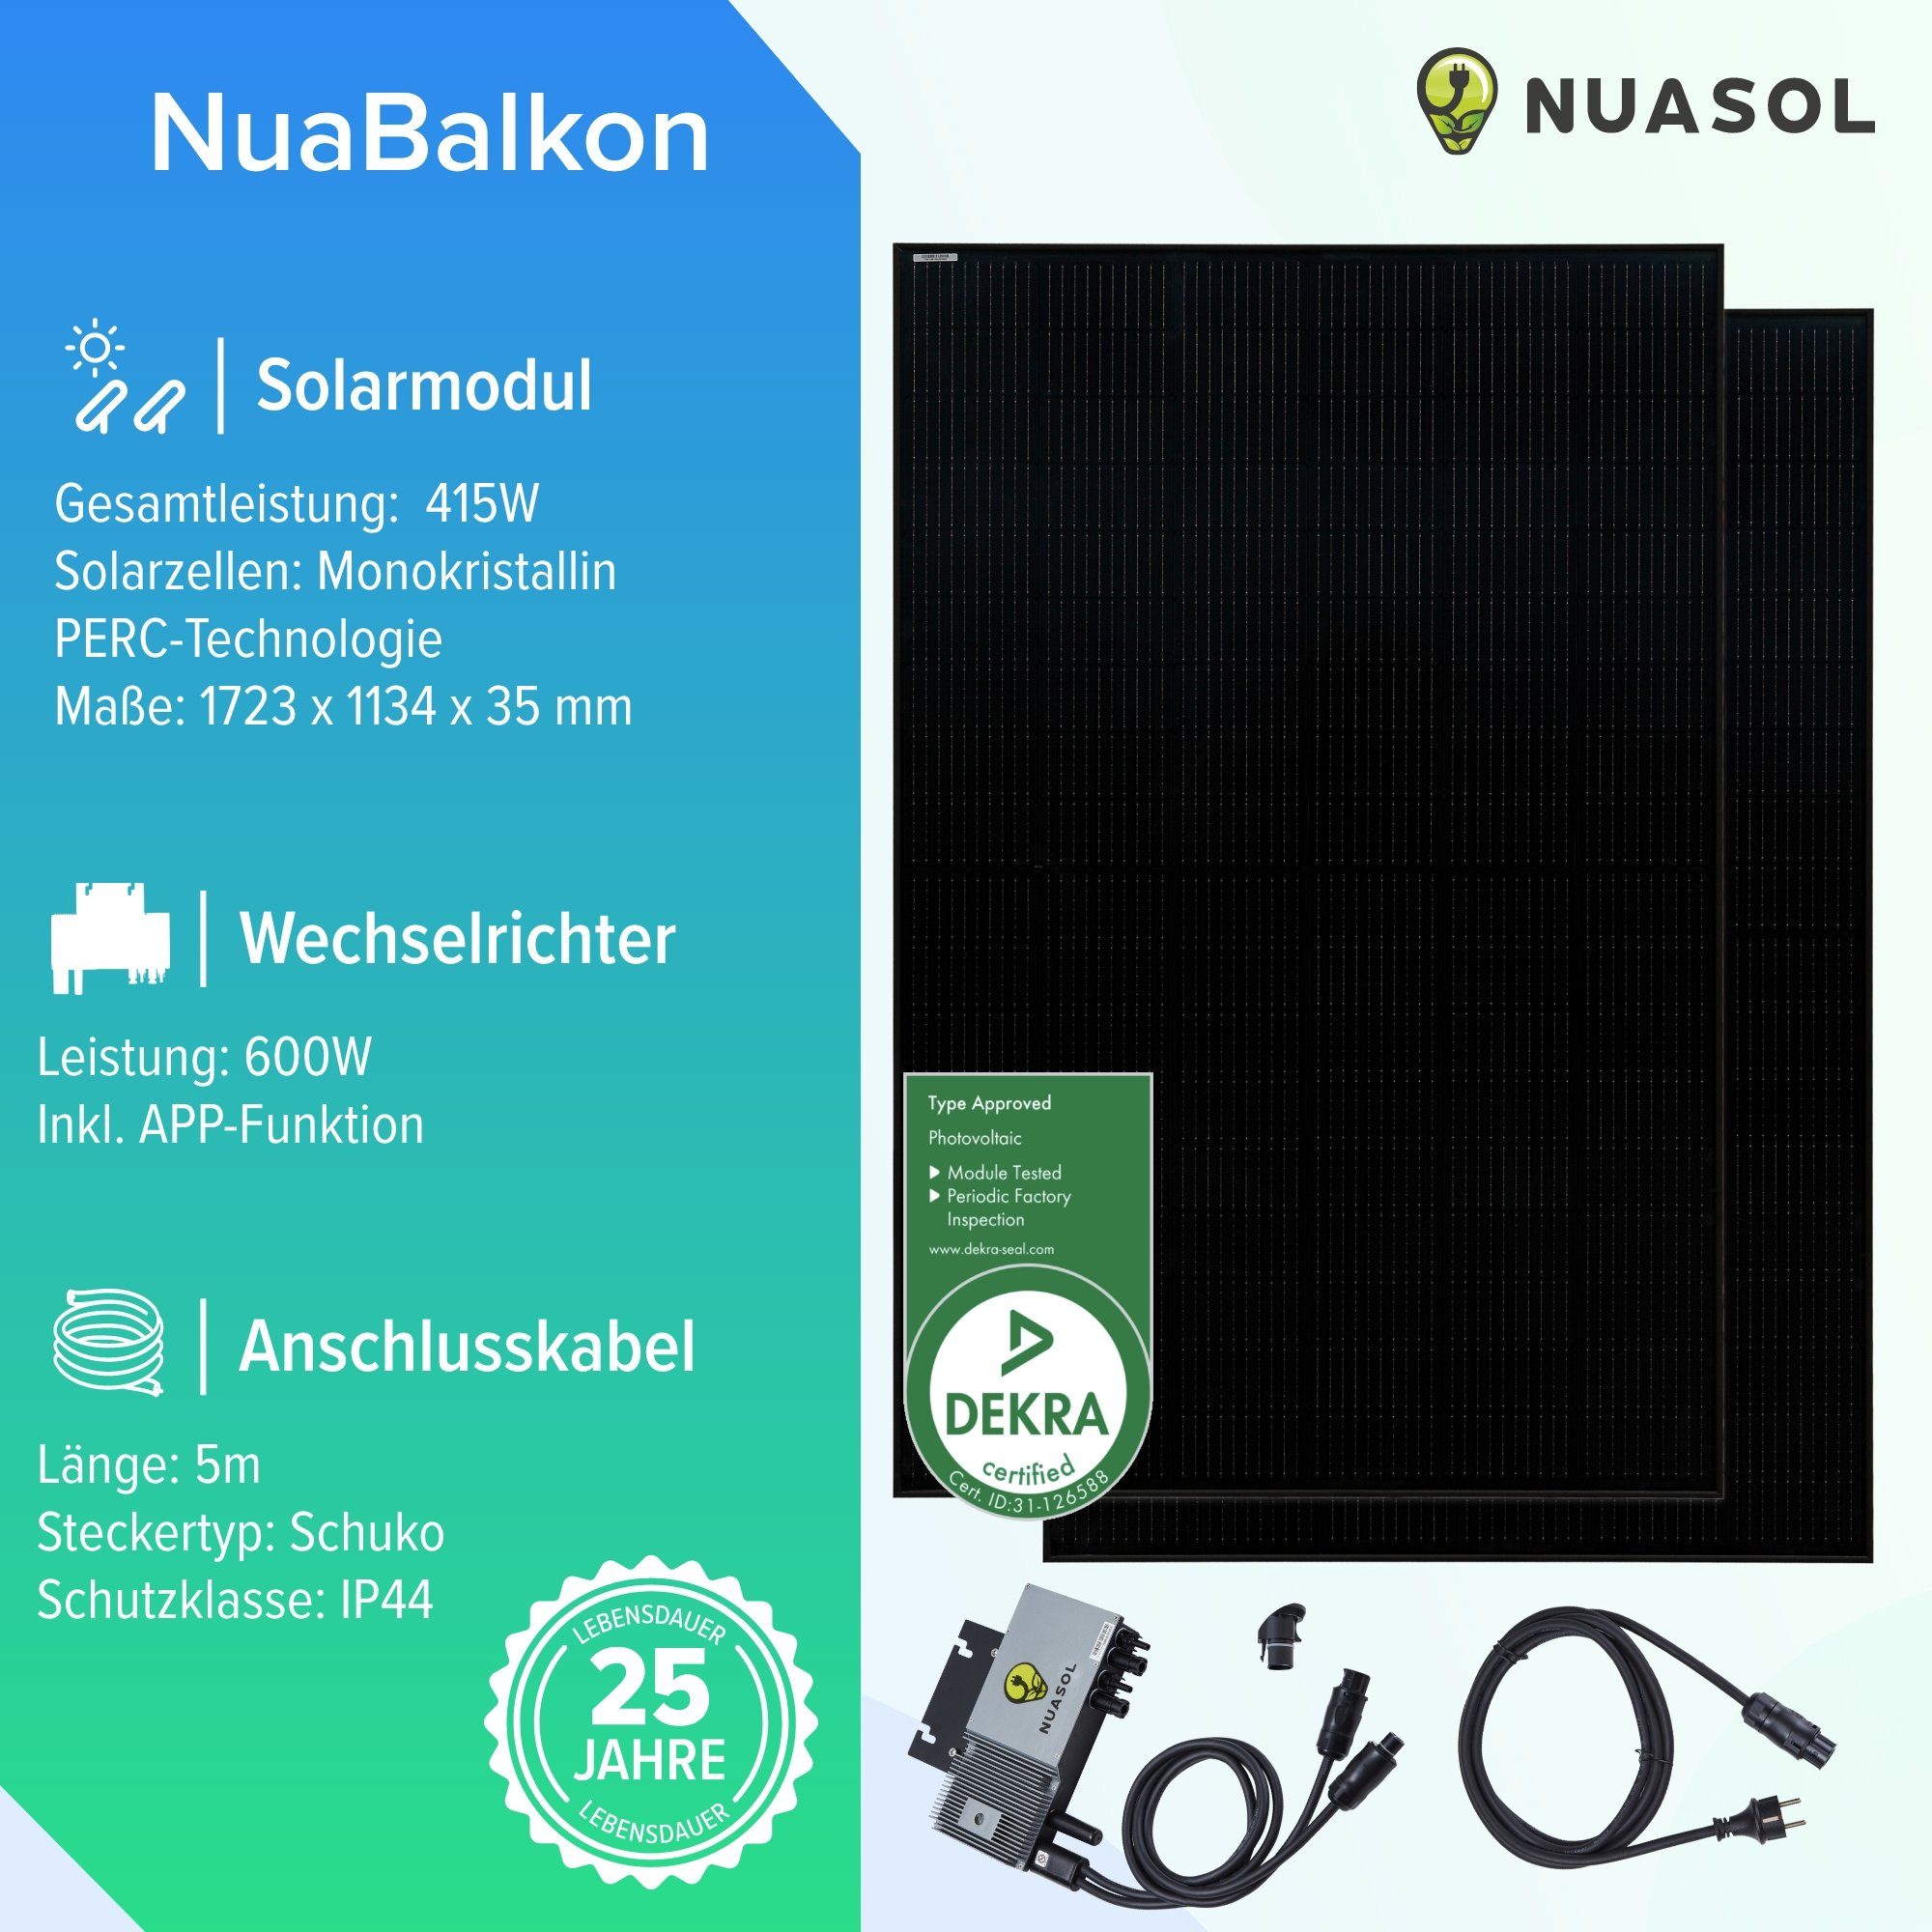 Solaranlage Balkonkraftwerk Zellstruktur 600W NuaSol Wechselrichter, monokristalline (2x415W), 830W